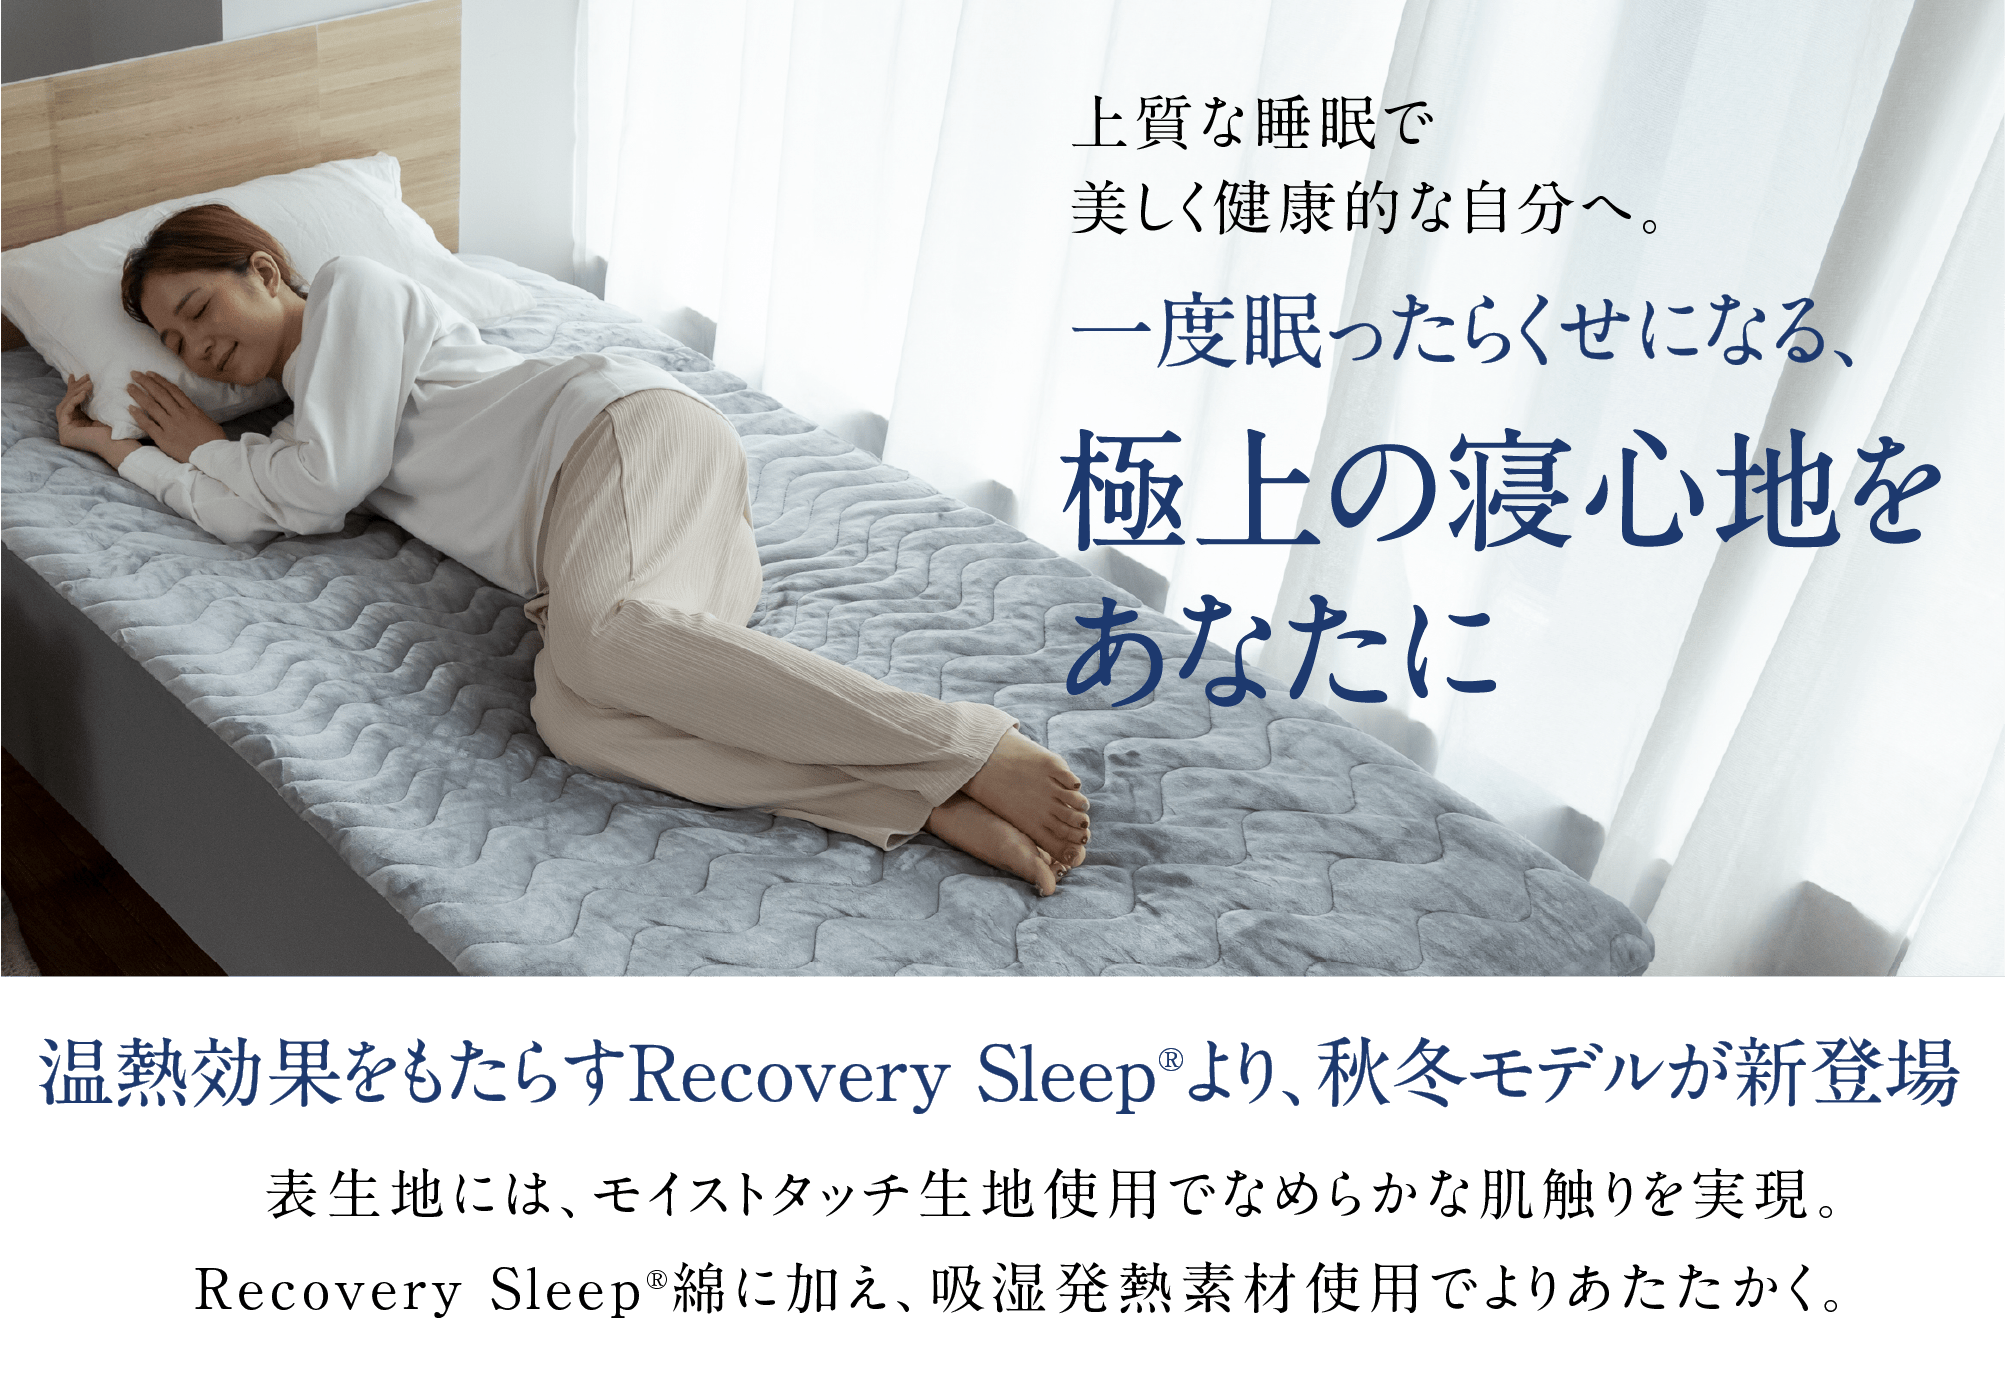 上質な睡眠で美しく健康的な自分へ。一度眠ったらくせになる、極上の寝心地をあなたに温熱効果をもたらすRecovery Sleep®より、秋冬モデルが新登場表生地には、モイストタッチ生地使用でなめらかな肌触りを実現。Recovery Sleep®綿に加え、吸湿発熱素材使用でよりあたたかく。